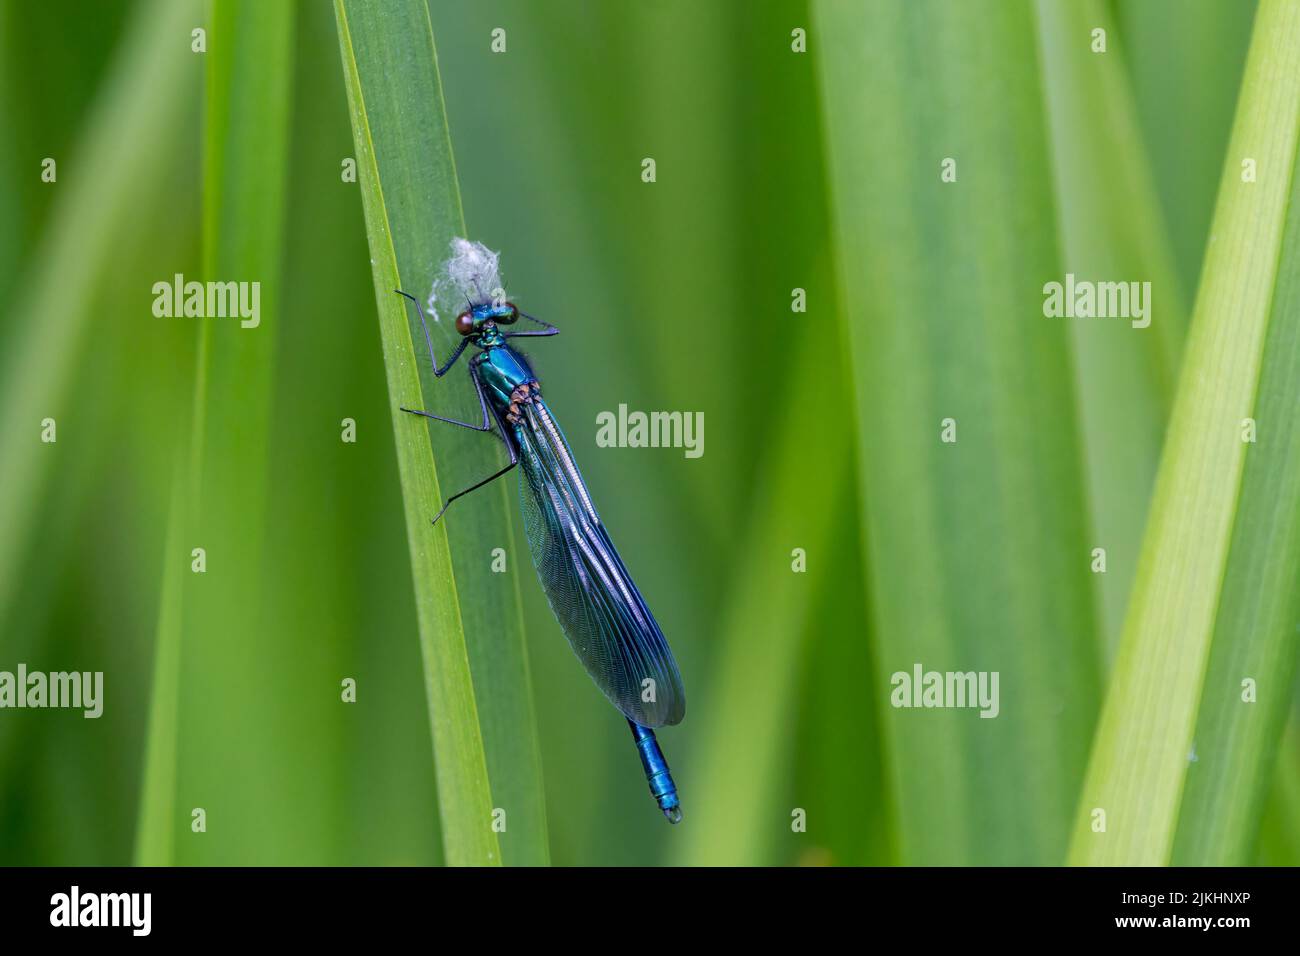 demoiselle bandada (calopteryx splendens) macho damselfly con forma de huella digital azul oscuro en las alas, cuerpo verde azul metálico y pequeños ojos separados Foto de stock